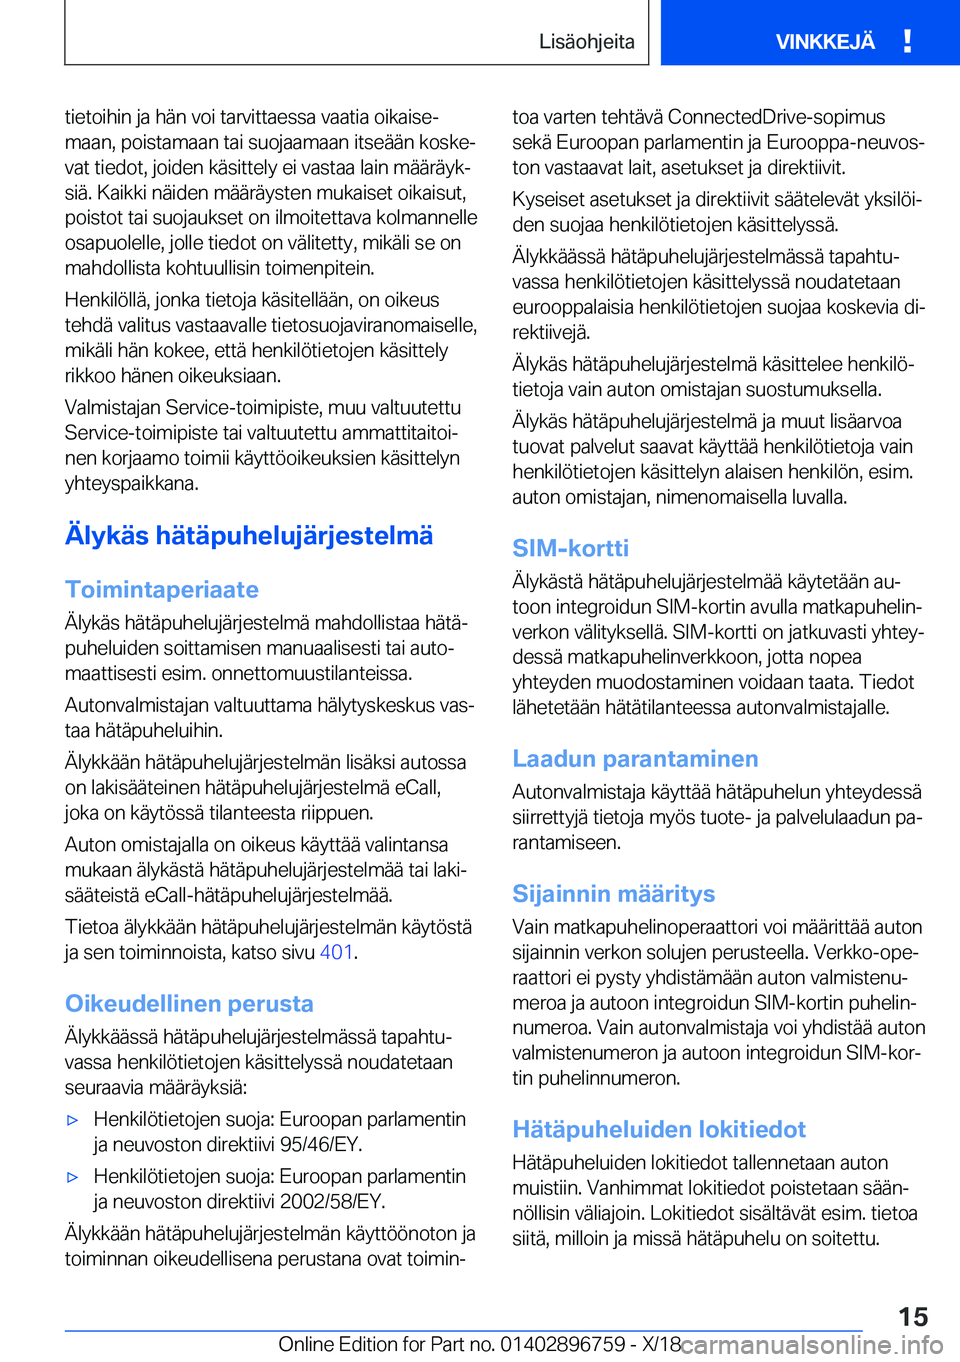 BMW X5 2019  Omistajan Käsikirja (in Finnish) �t�i�e�t�o�i�h�i�n��j�a��h�